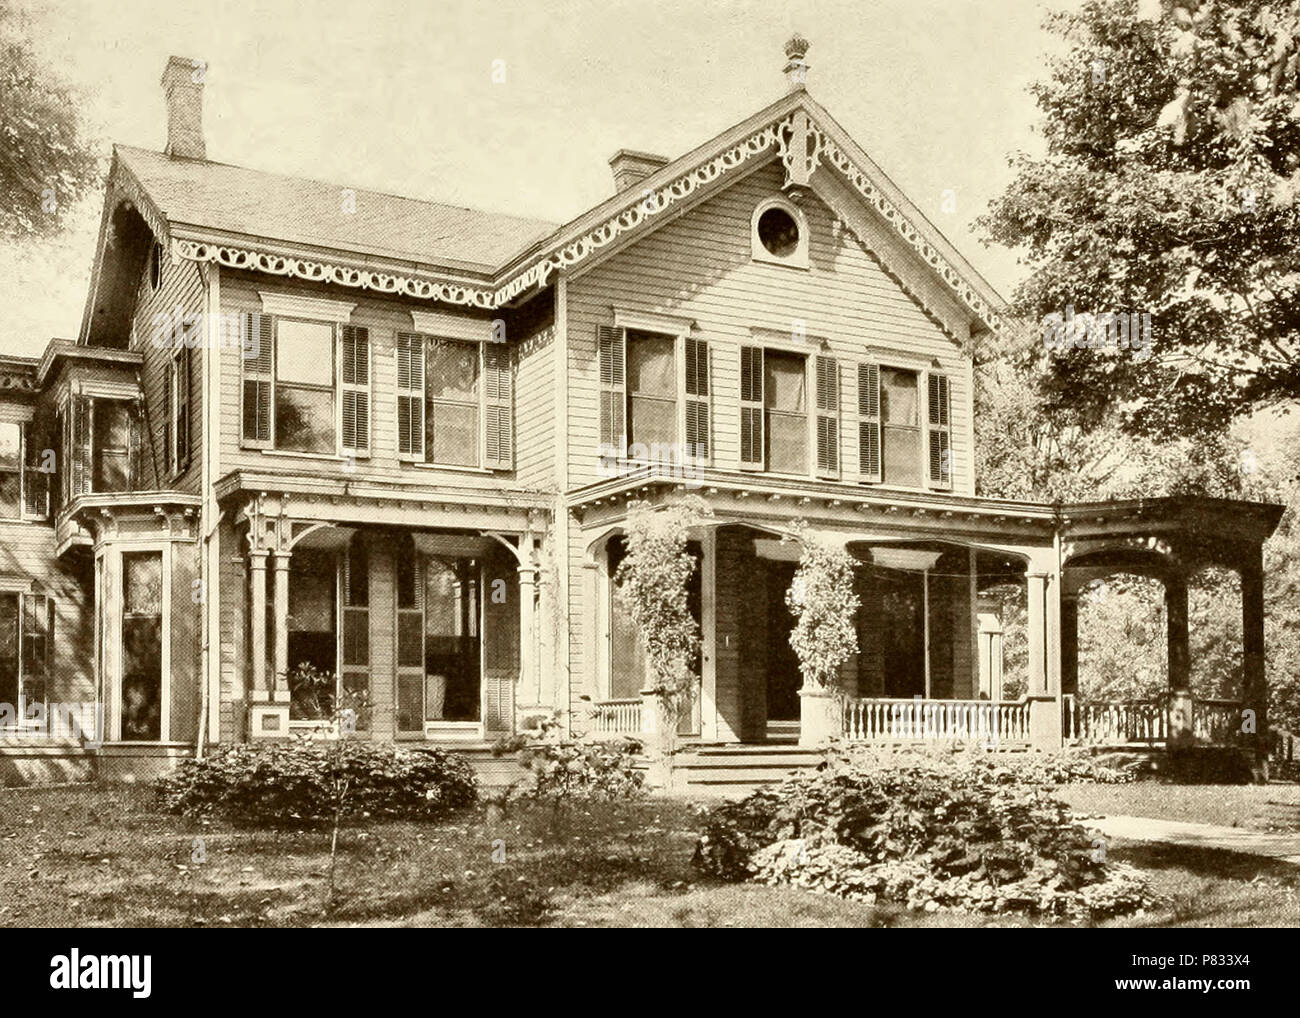 Accueil du Président William McKinley et de la Première Dame Ida McKinley, Canton, Ohio, vers 1900 Banque D'Images